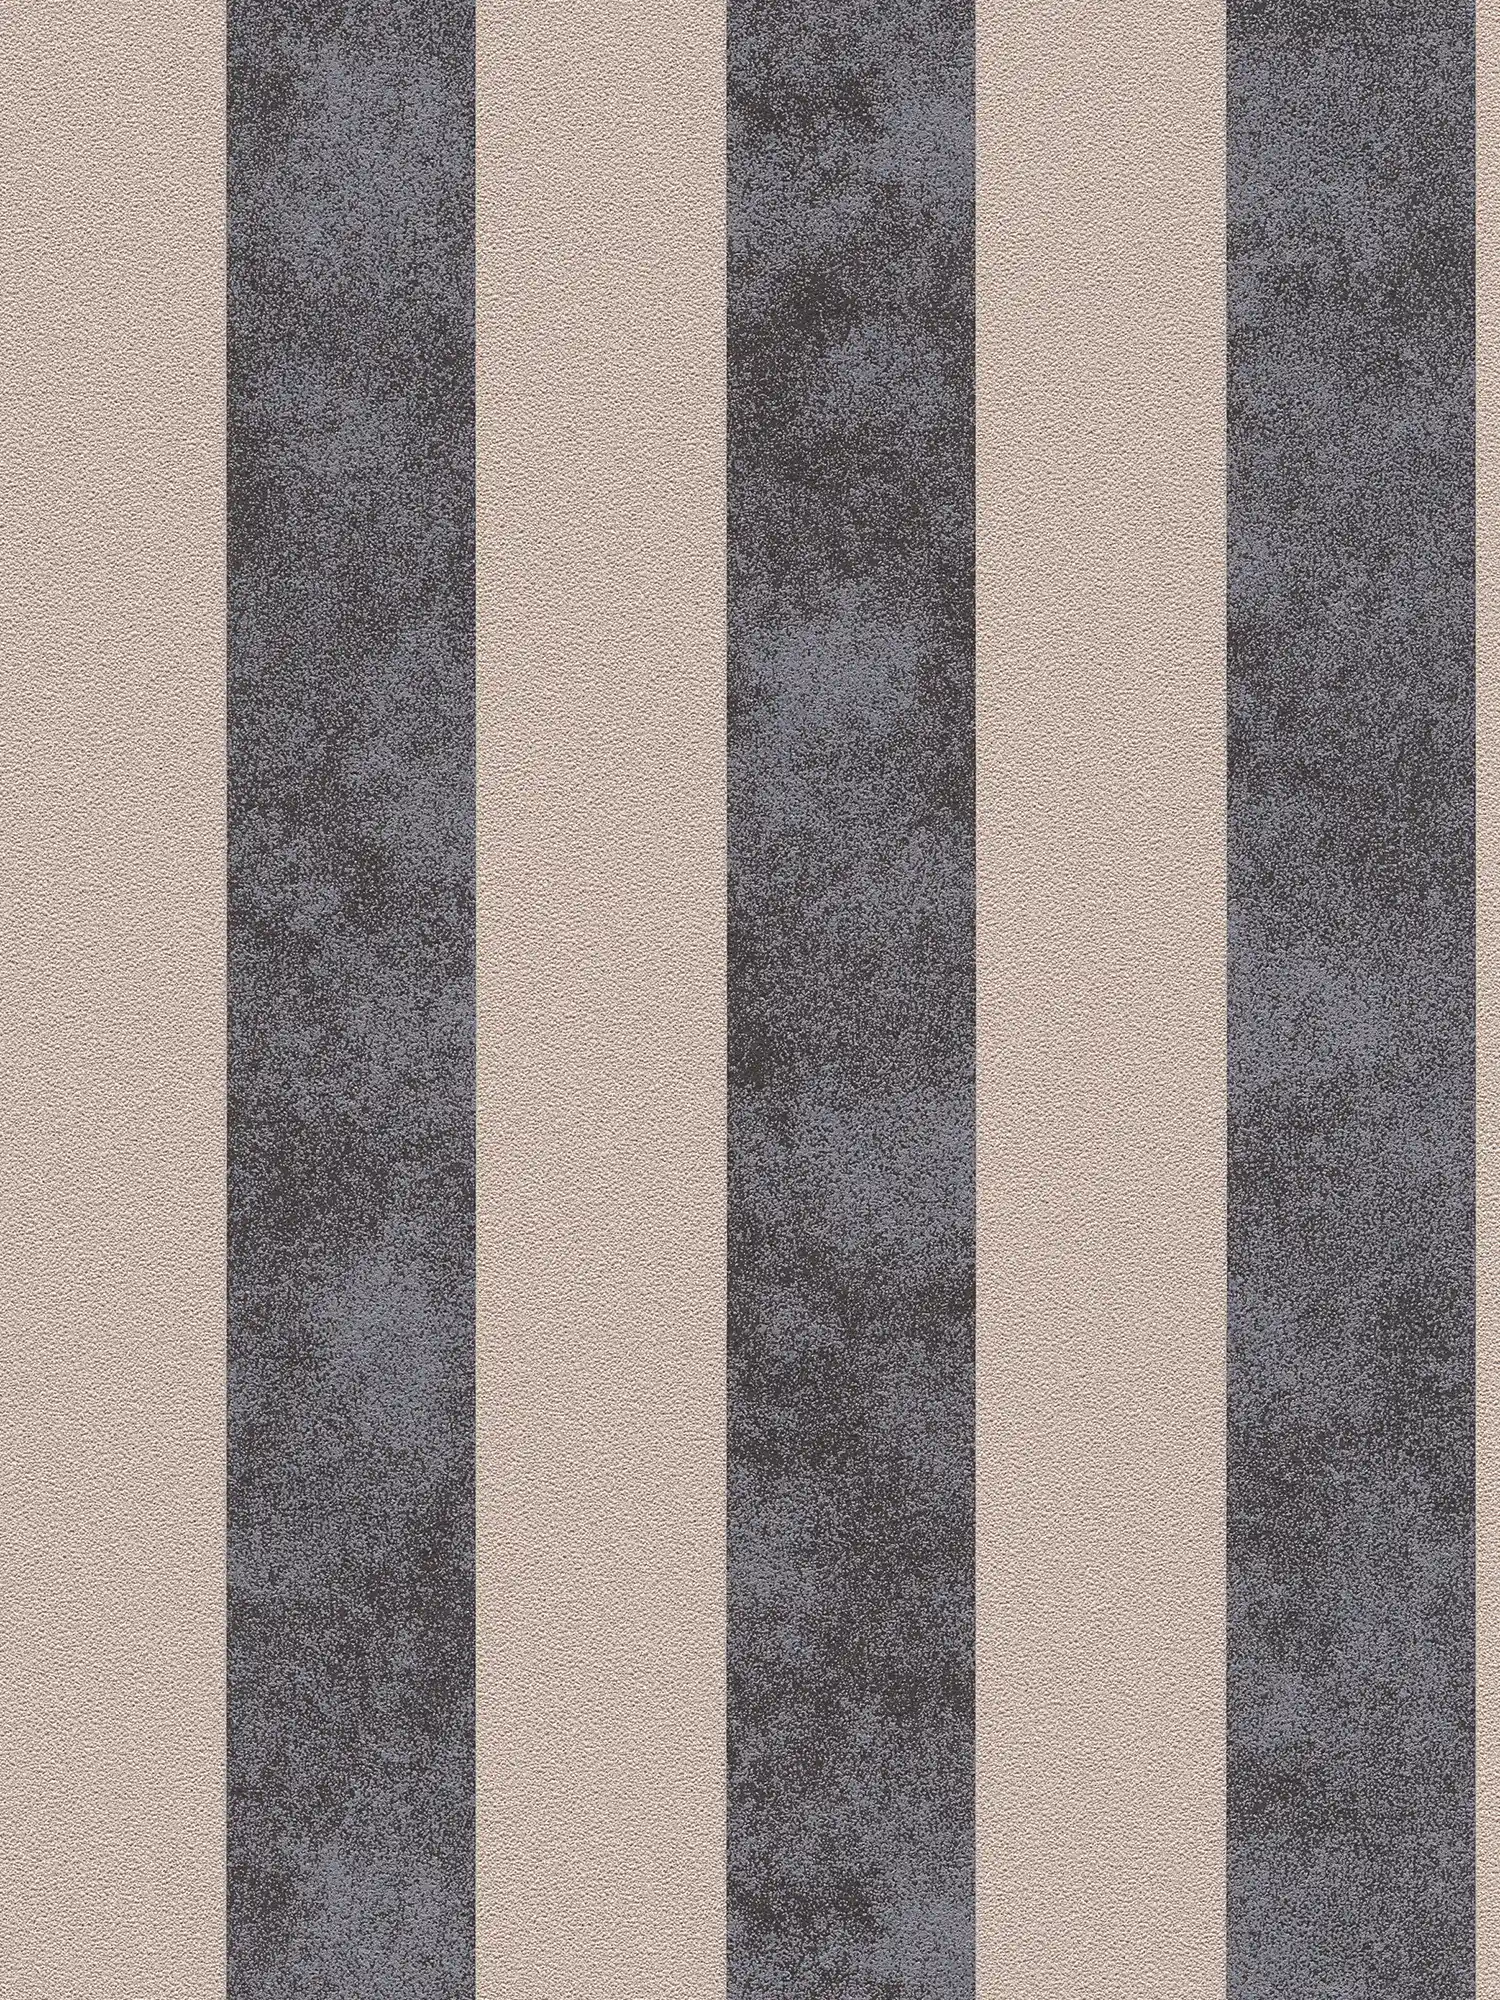 Blokstreepbehang met kleur en structuurpatroon - zwart, beige, zilver
